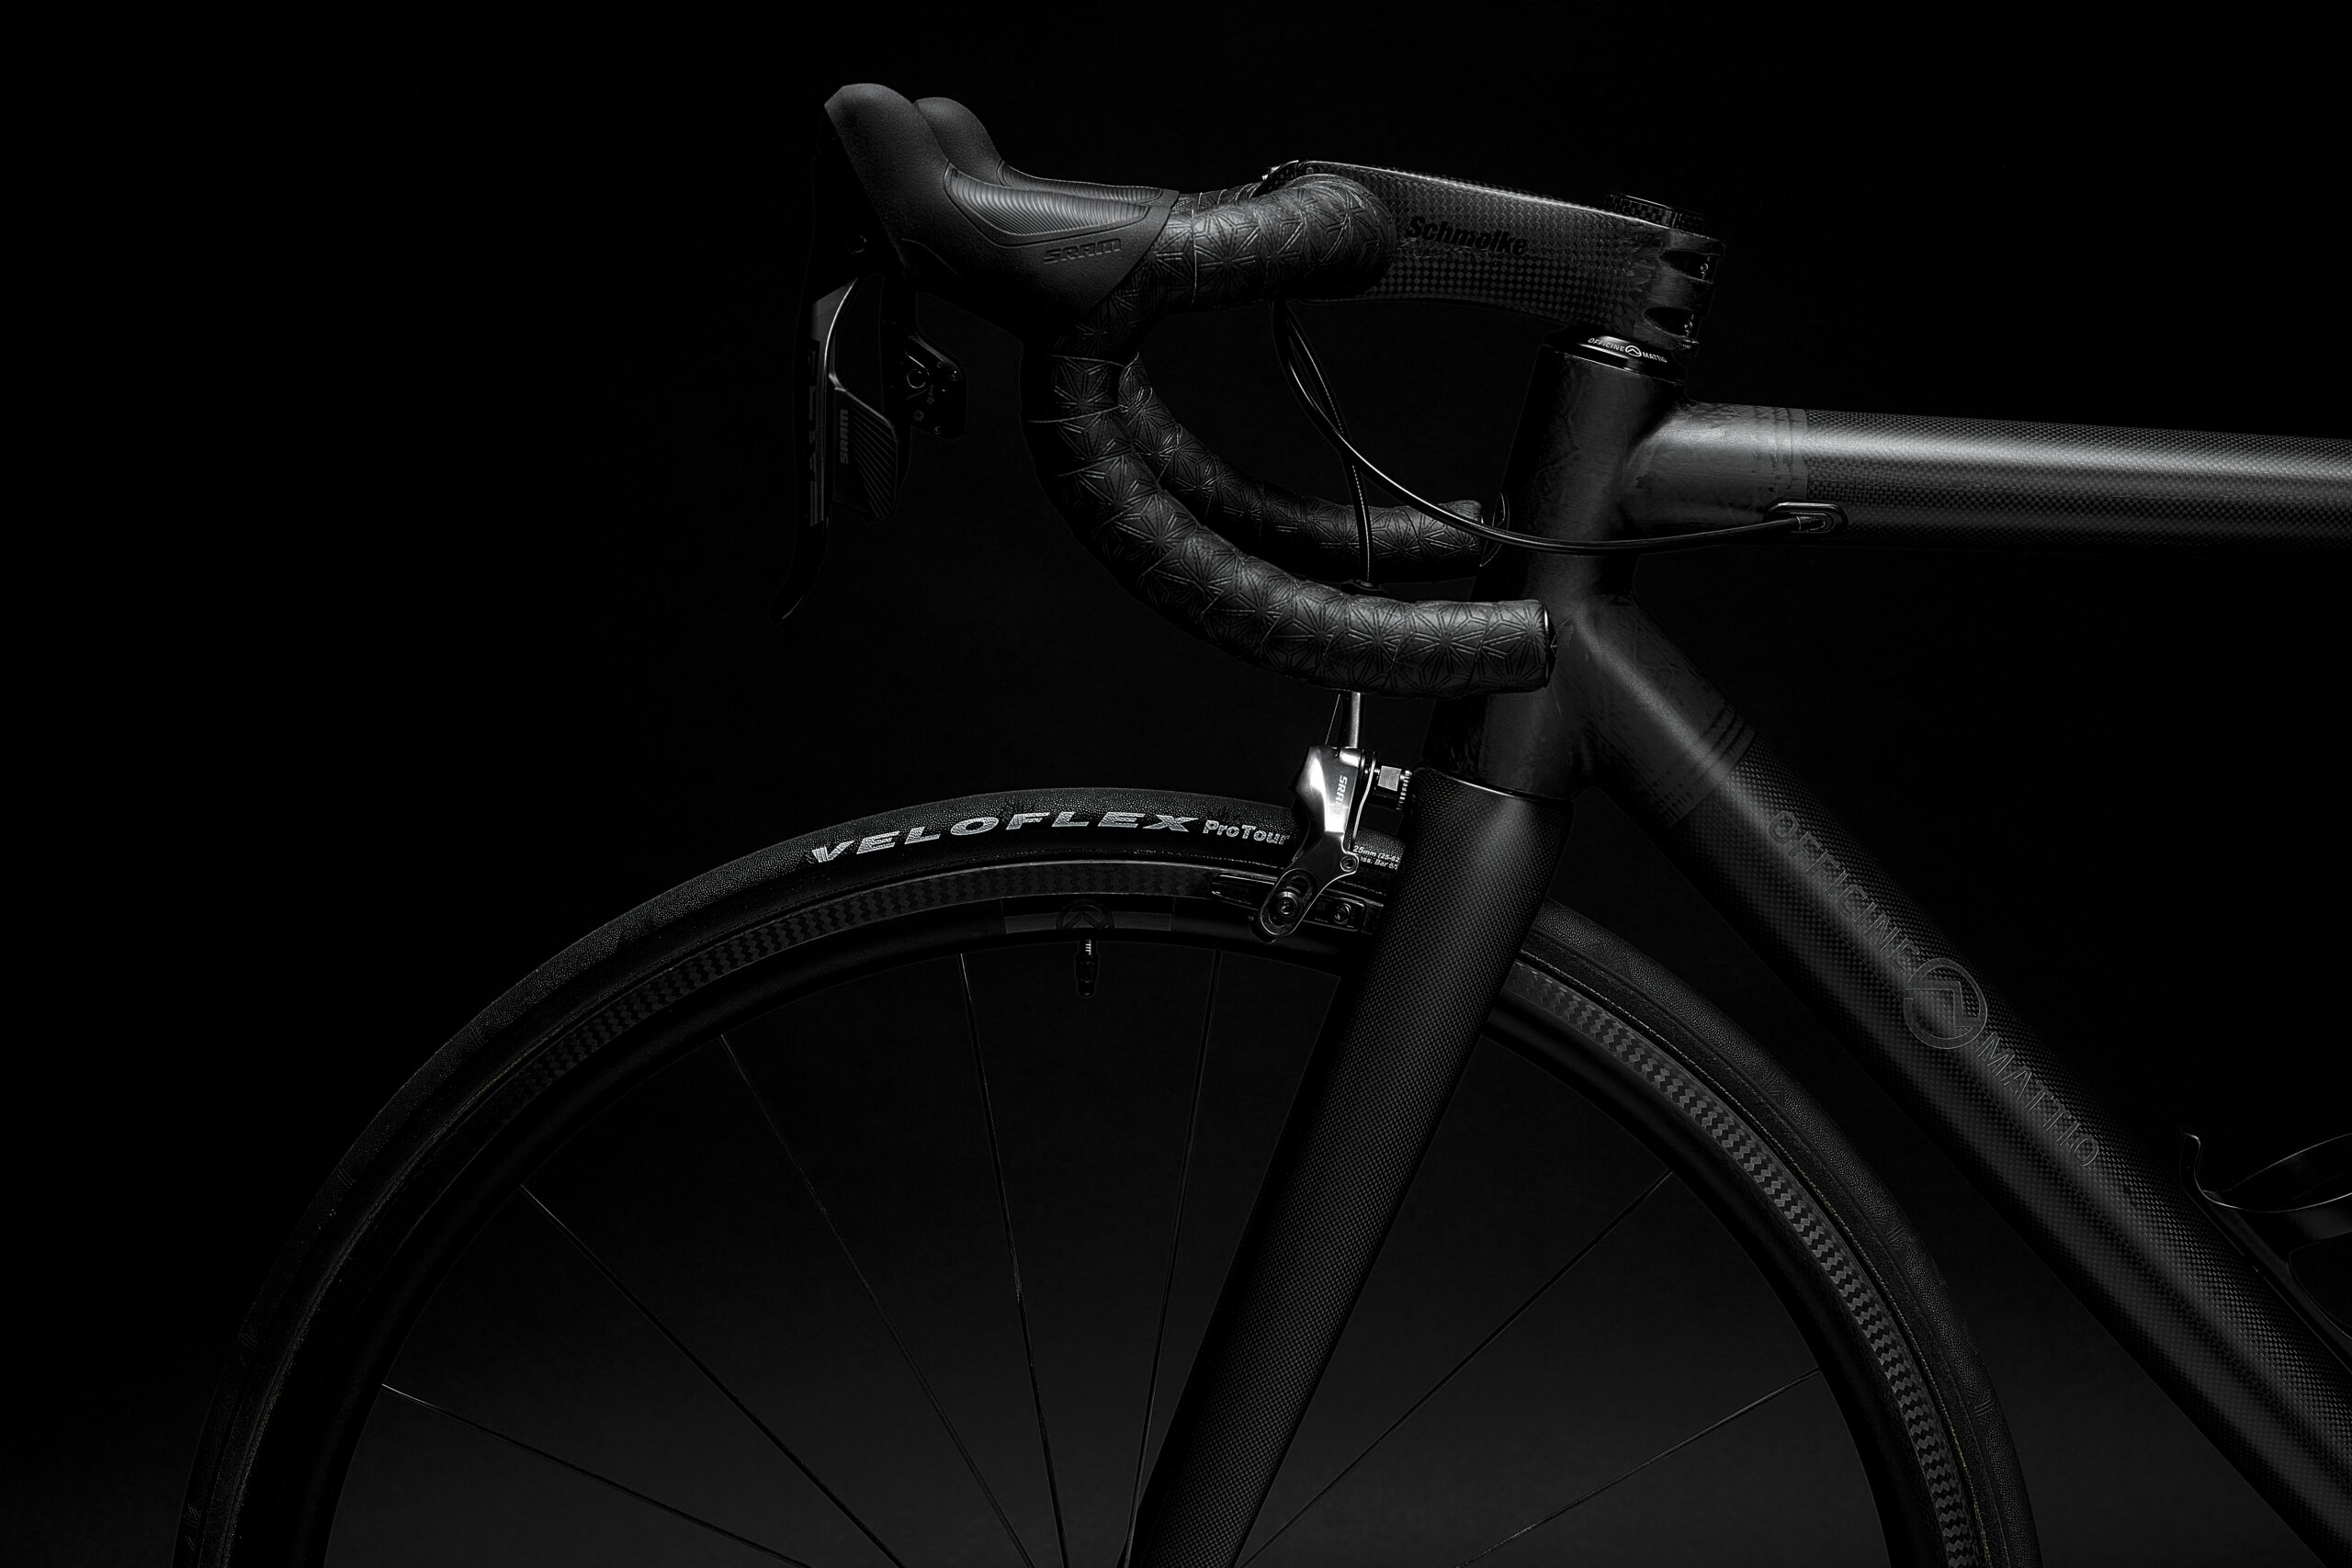 Bicicletta Officine Mattio modello SL in fibra di carbonio, produzione made in italy fotografia dettaglio manubrio